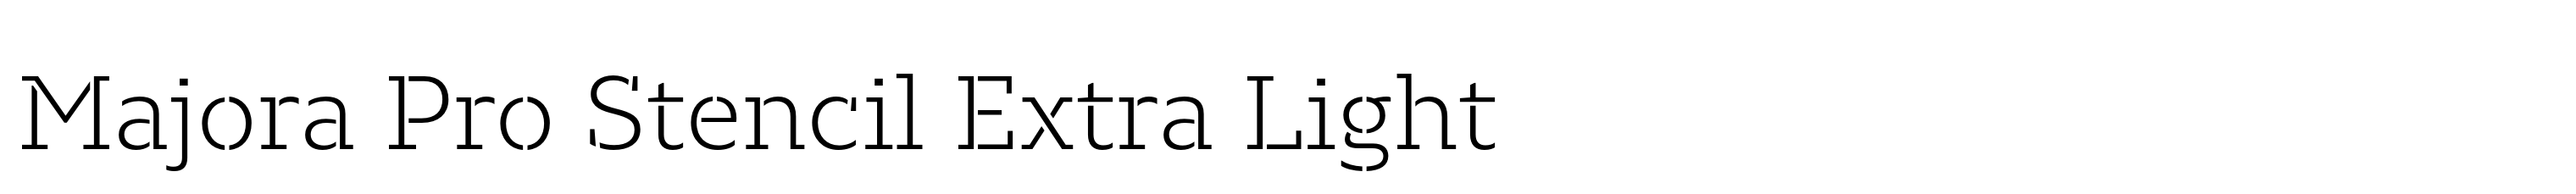 Majora Pro Stencil Extra Light